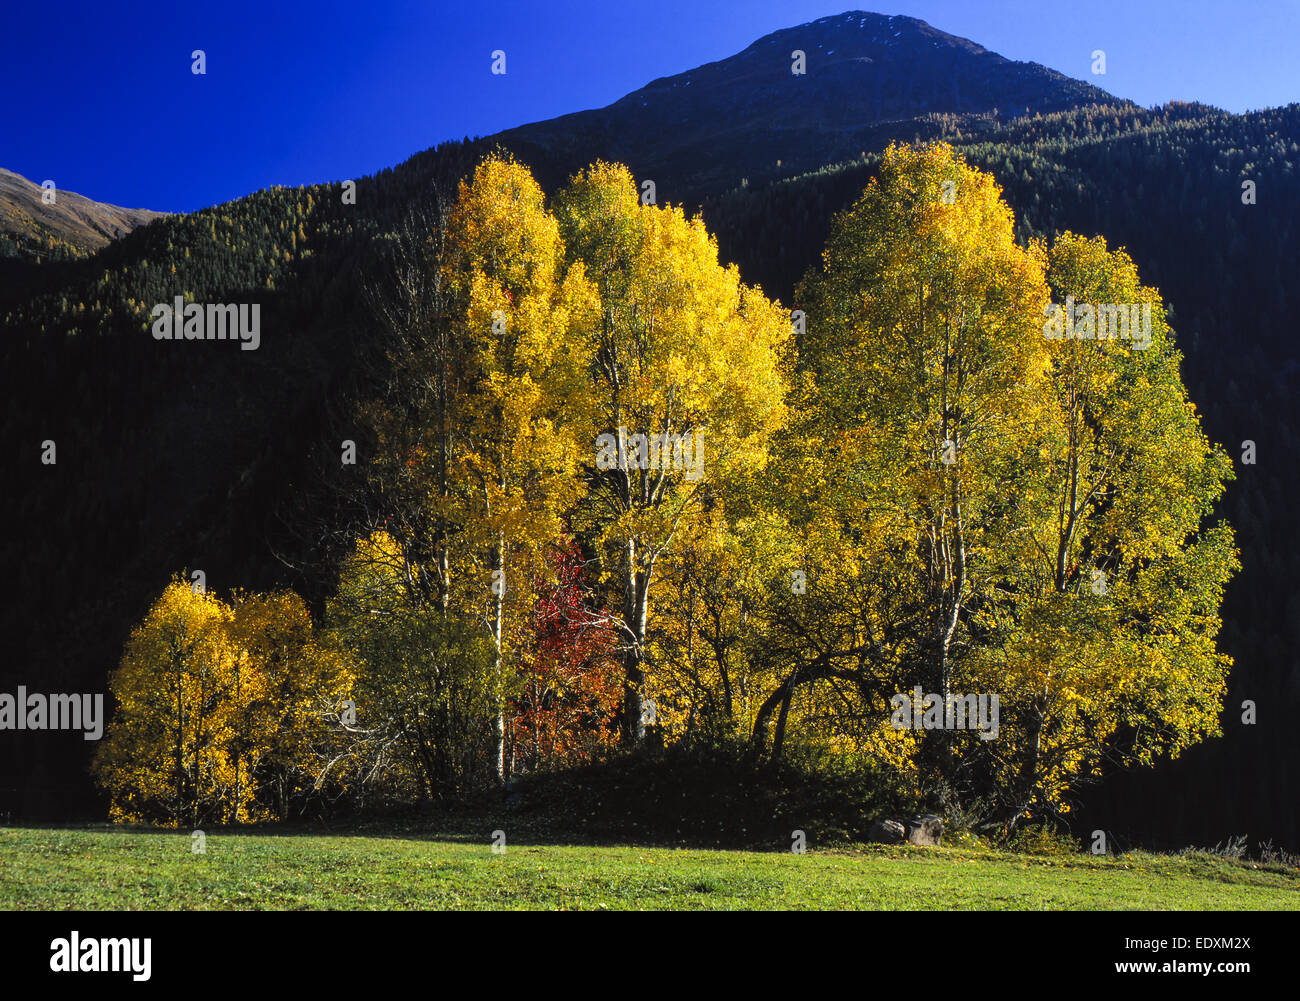 Eine Gruppe Espenim Herbst, eine Gruppe von Aspen Bäume im Herbst, Herbst, Herbst, Aspen, Natur, Baum, Bäume, Blätter, farbig, gelb, Stockfoto